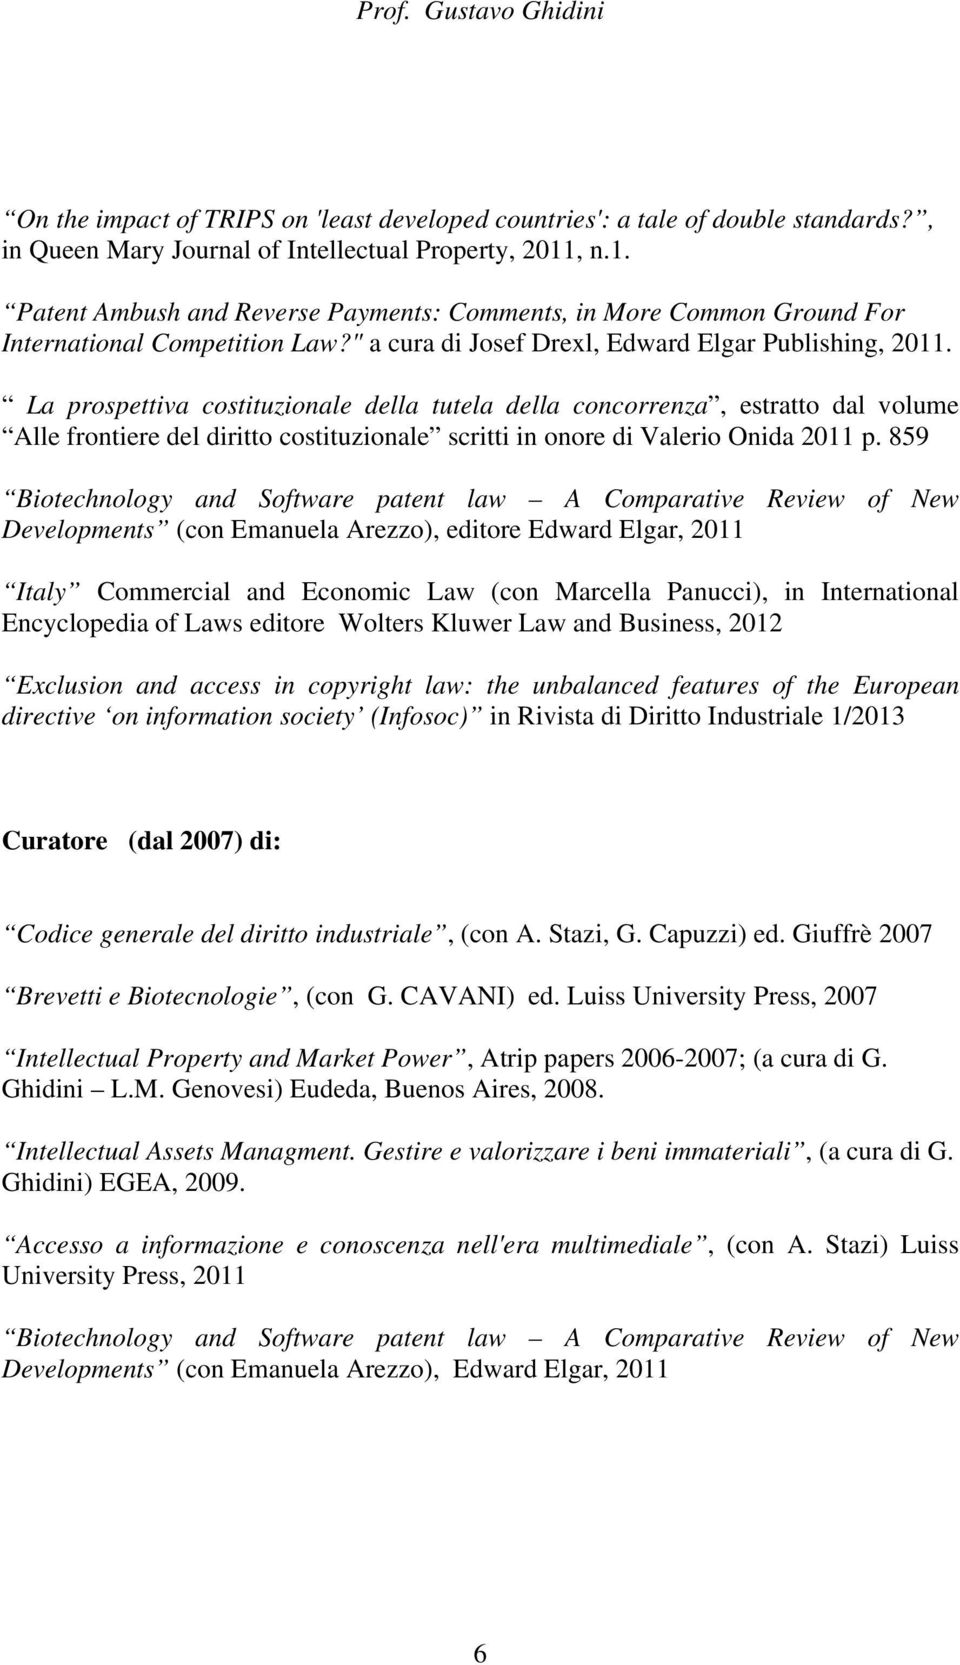 La prospettiva costituzionale della tutela della concorrenza, estratto dal volume Alle frontiere del diritto costituzionale scritti in onore di Valerio Onida 2011 p.